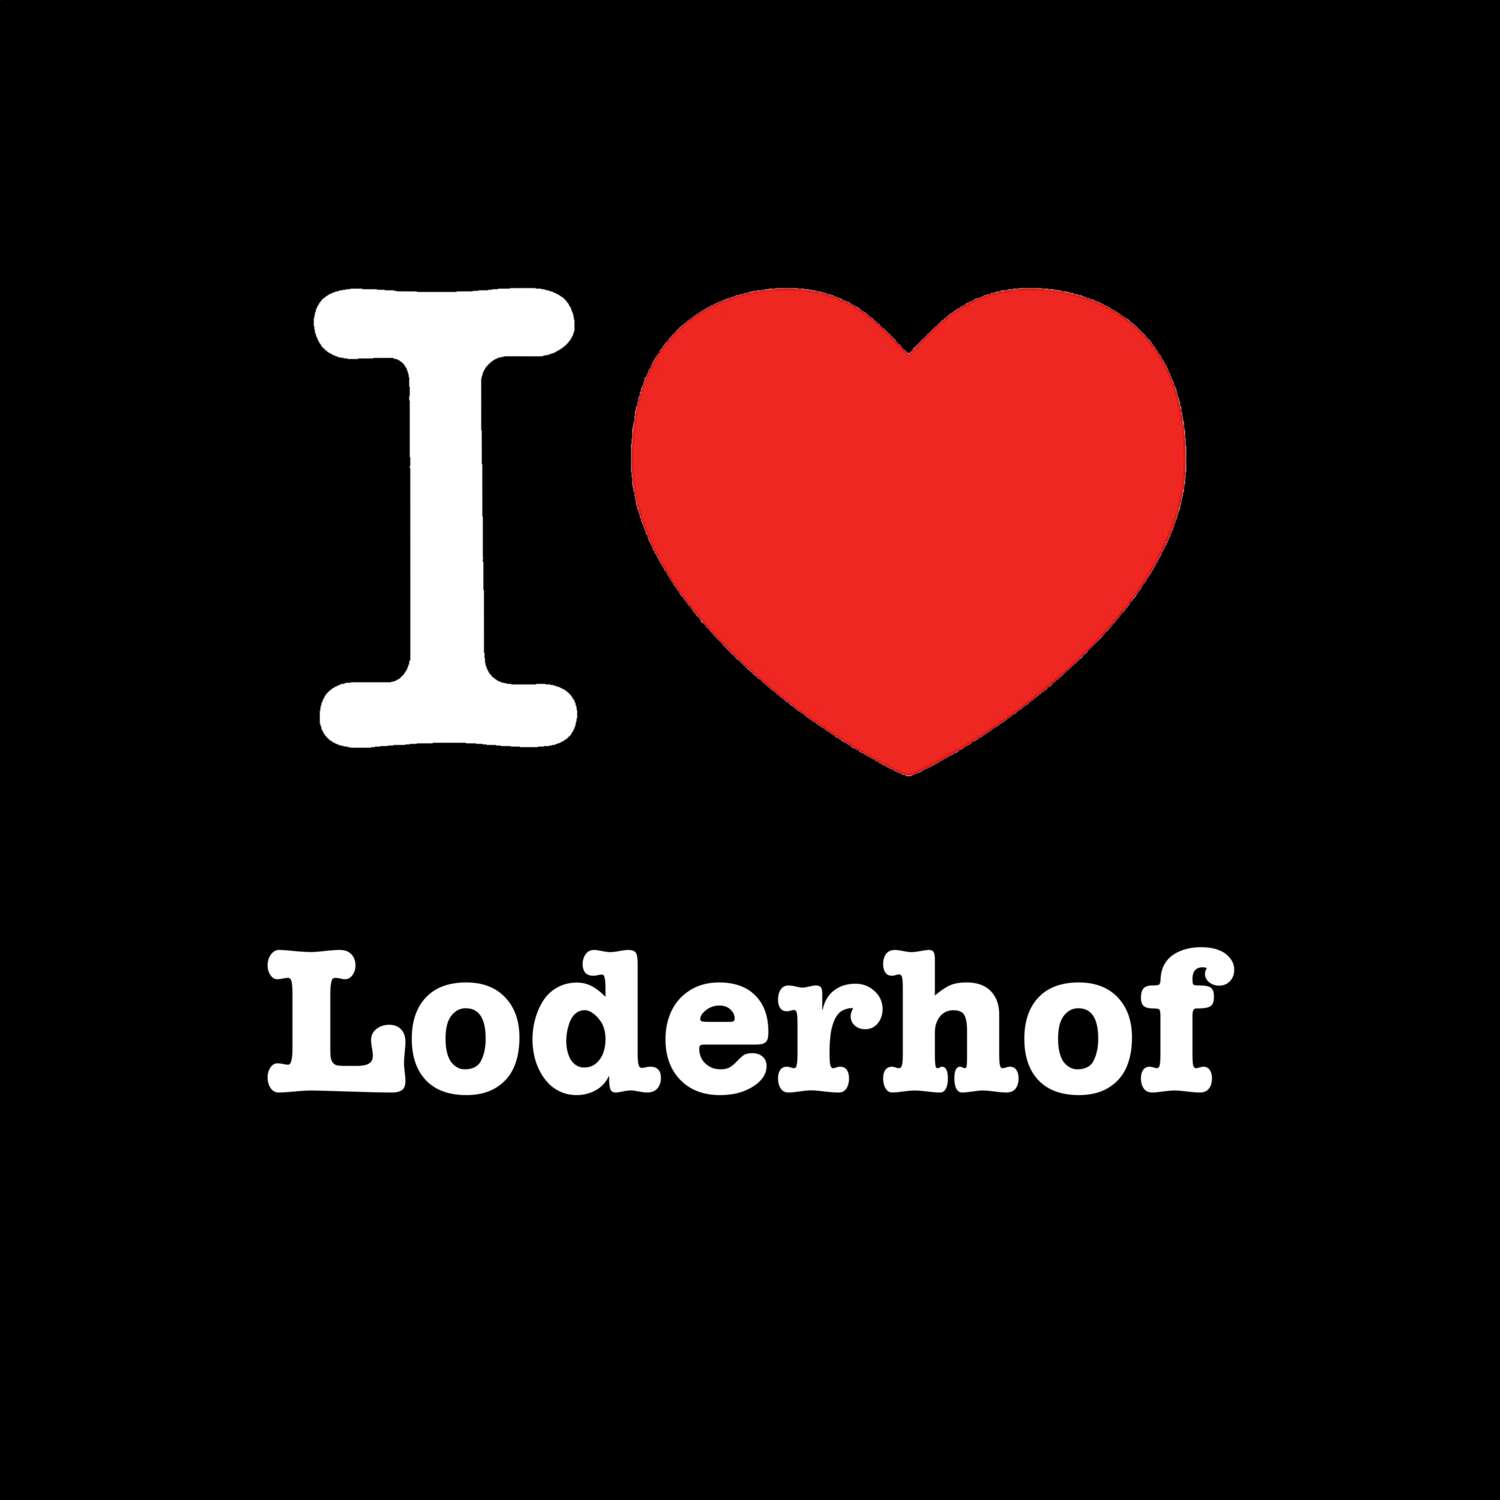 Loderhof T-Shirt »I love«